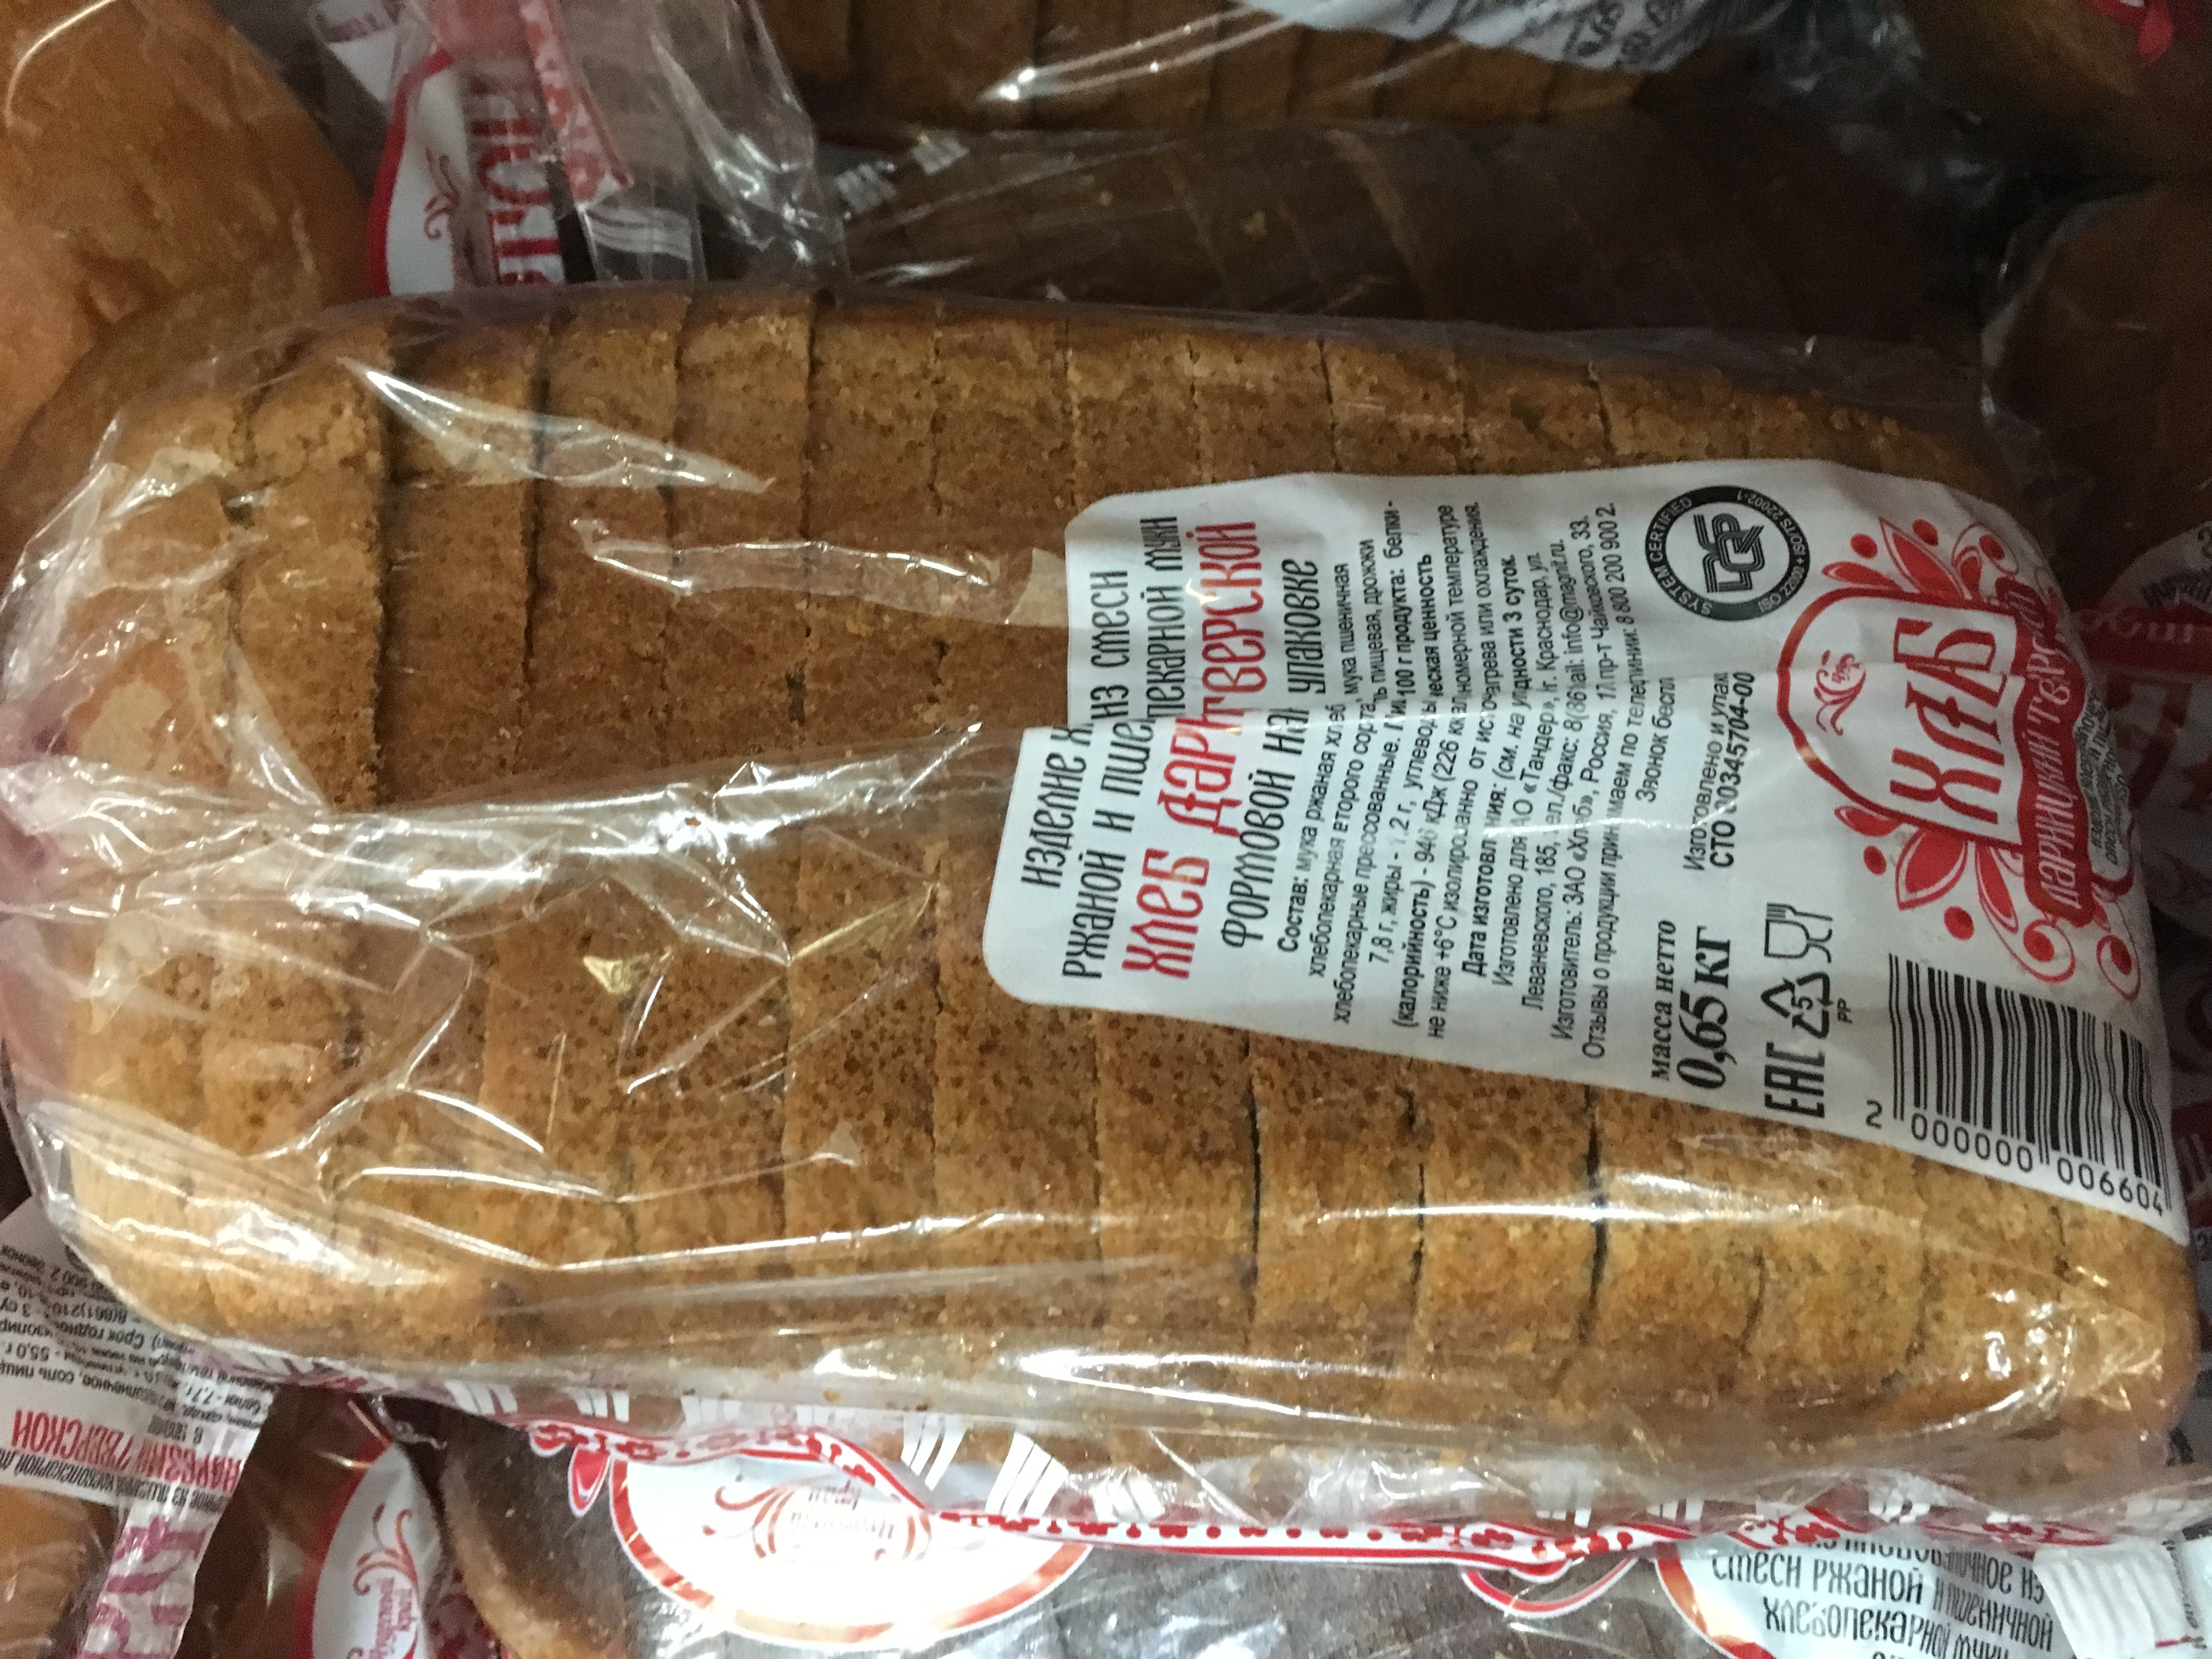 (Интересно, догадываются ли производители, которые продают хлеб в нарезке, что народ считает это неуважением?)